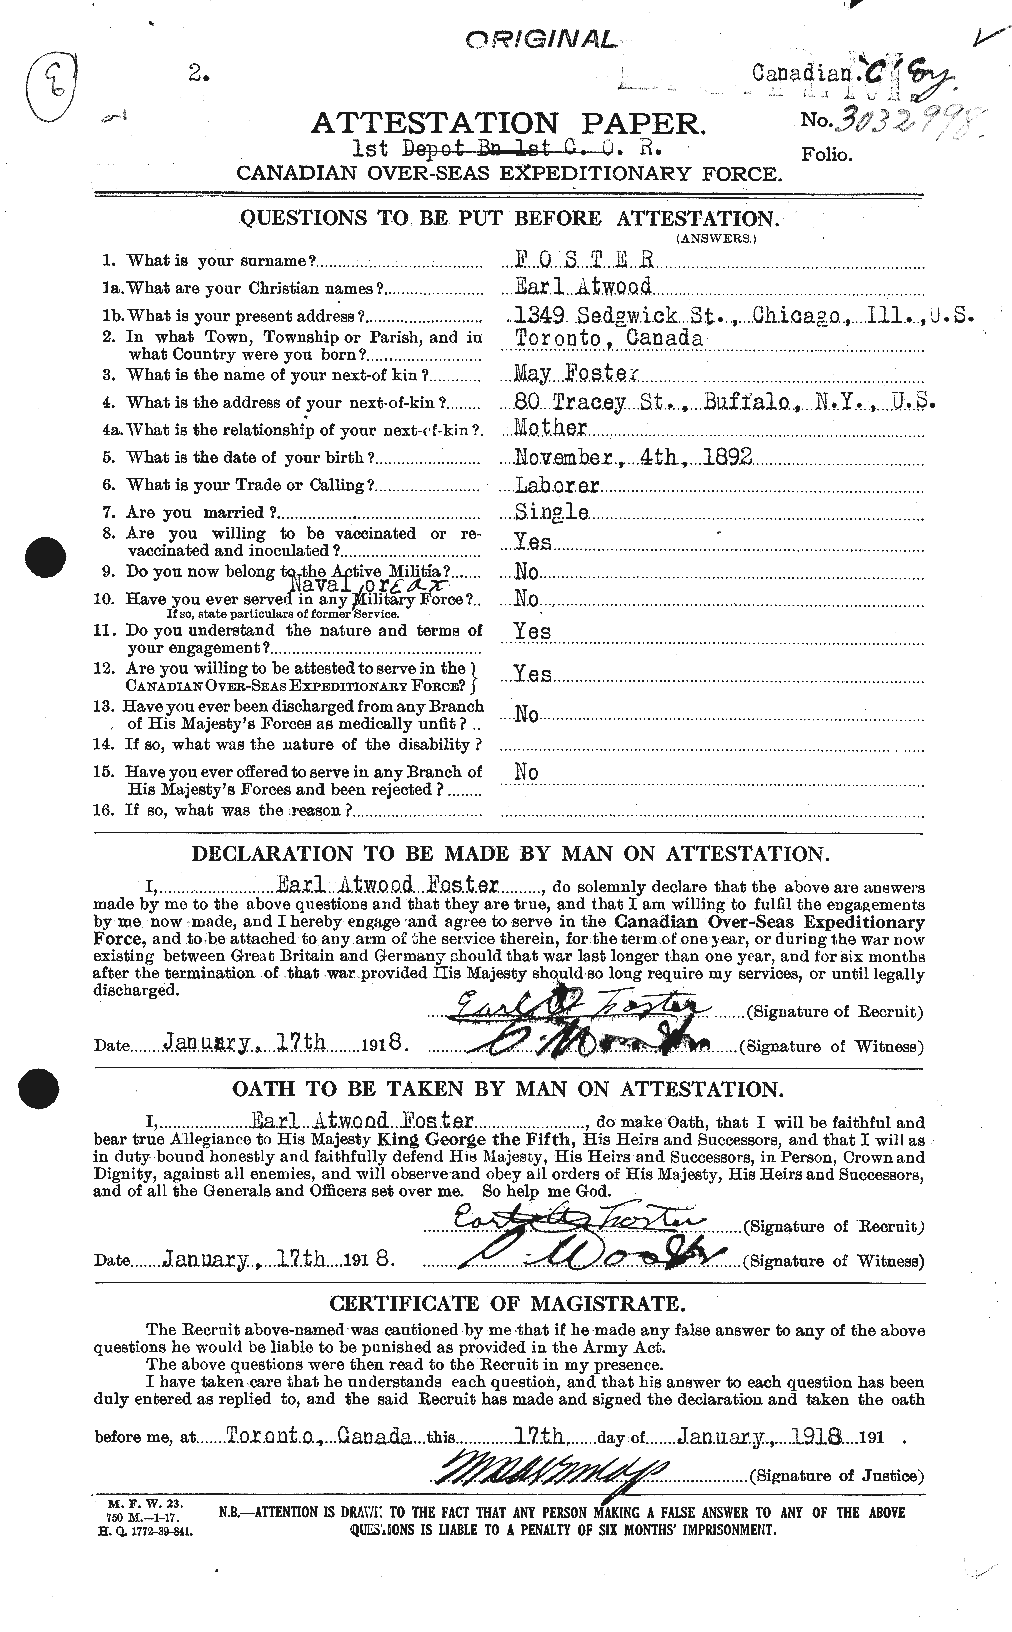 Dossiers du Personnel de la Première Guerre mondiale - CEC 330569a